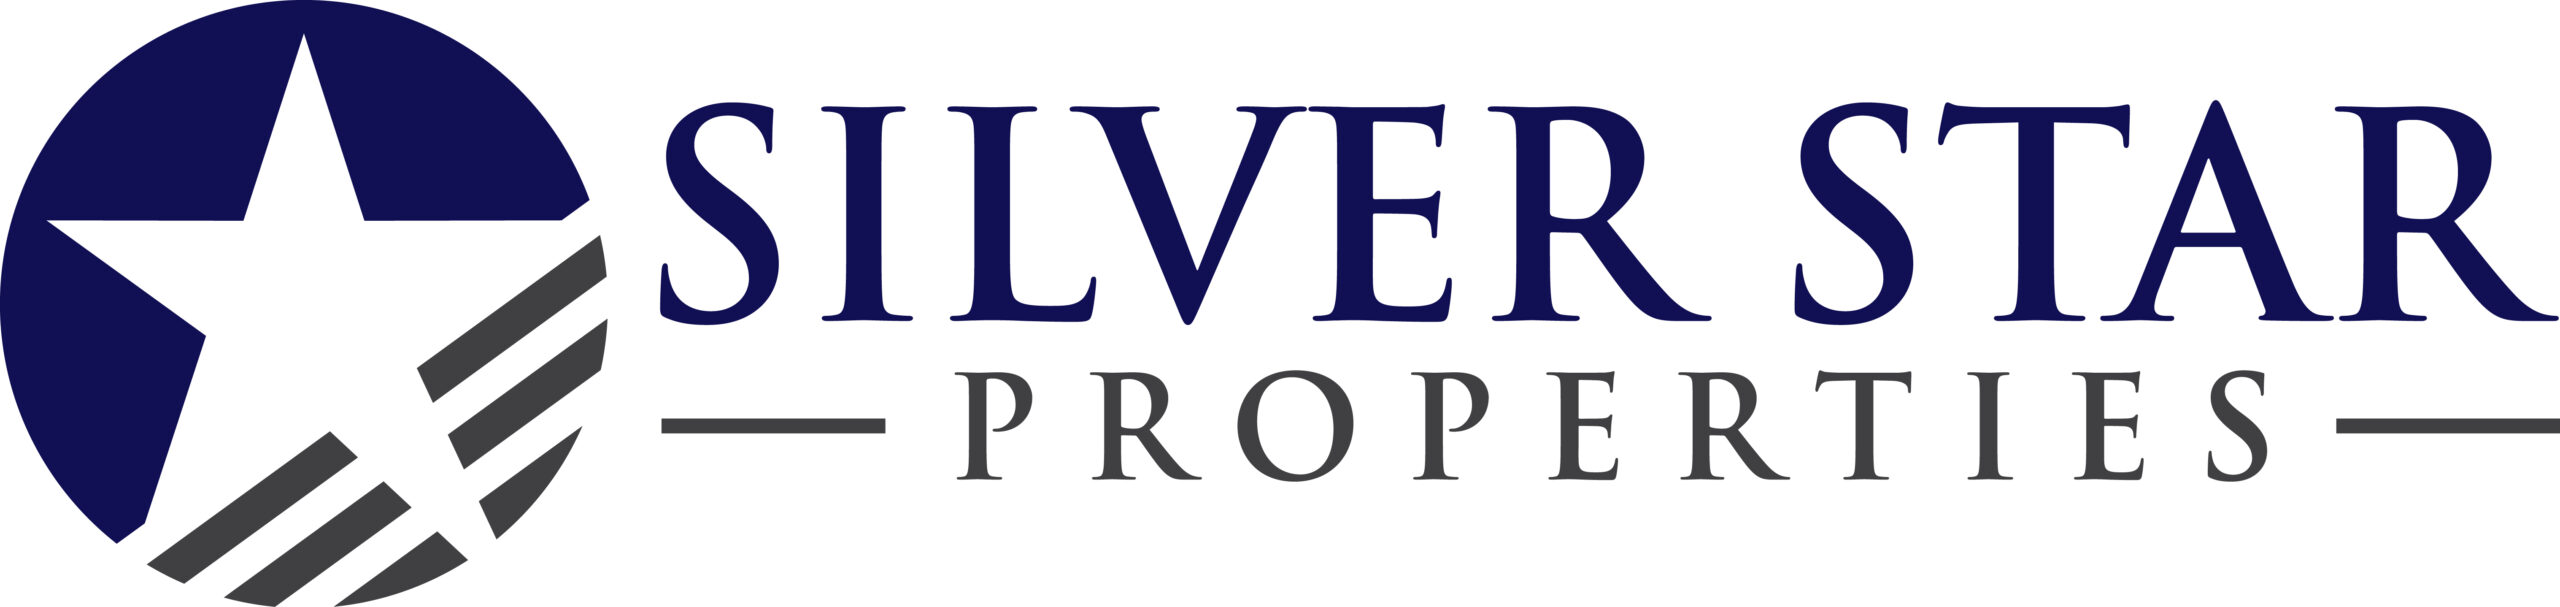 Silver Star Properties REIT